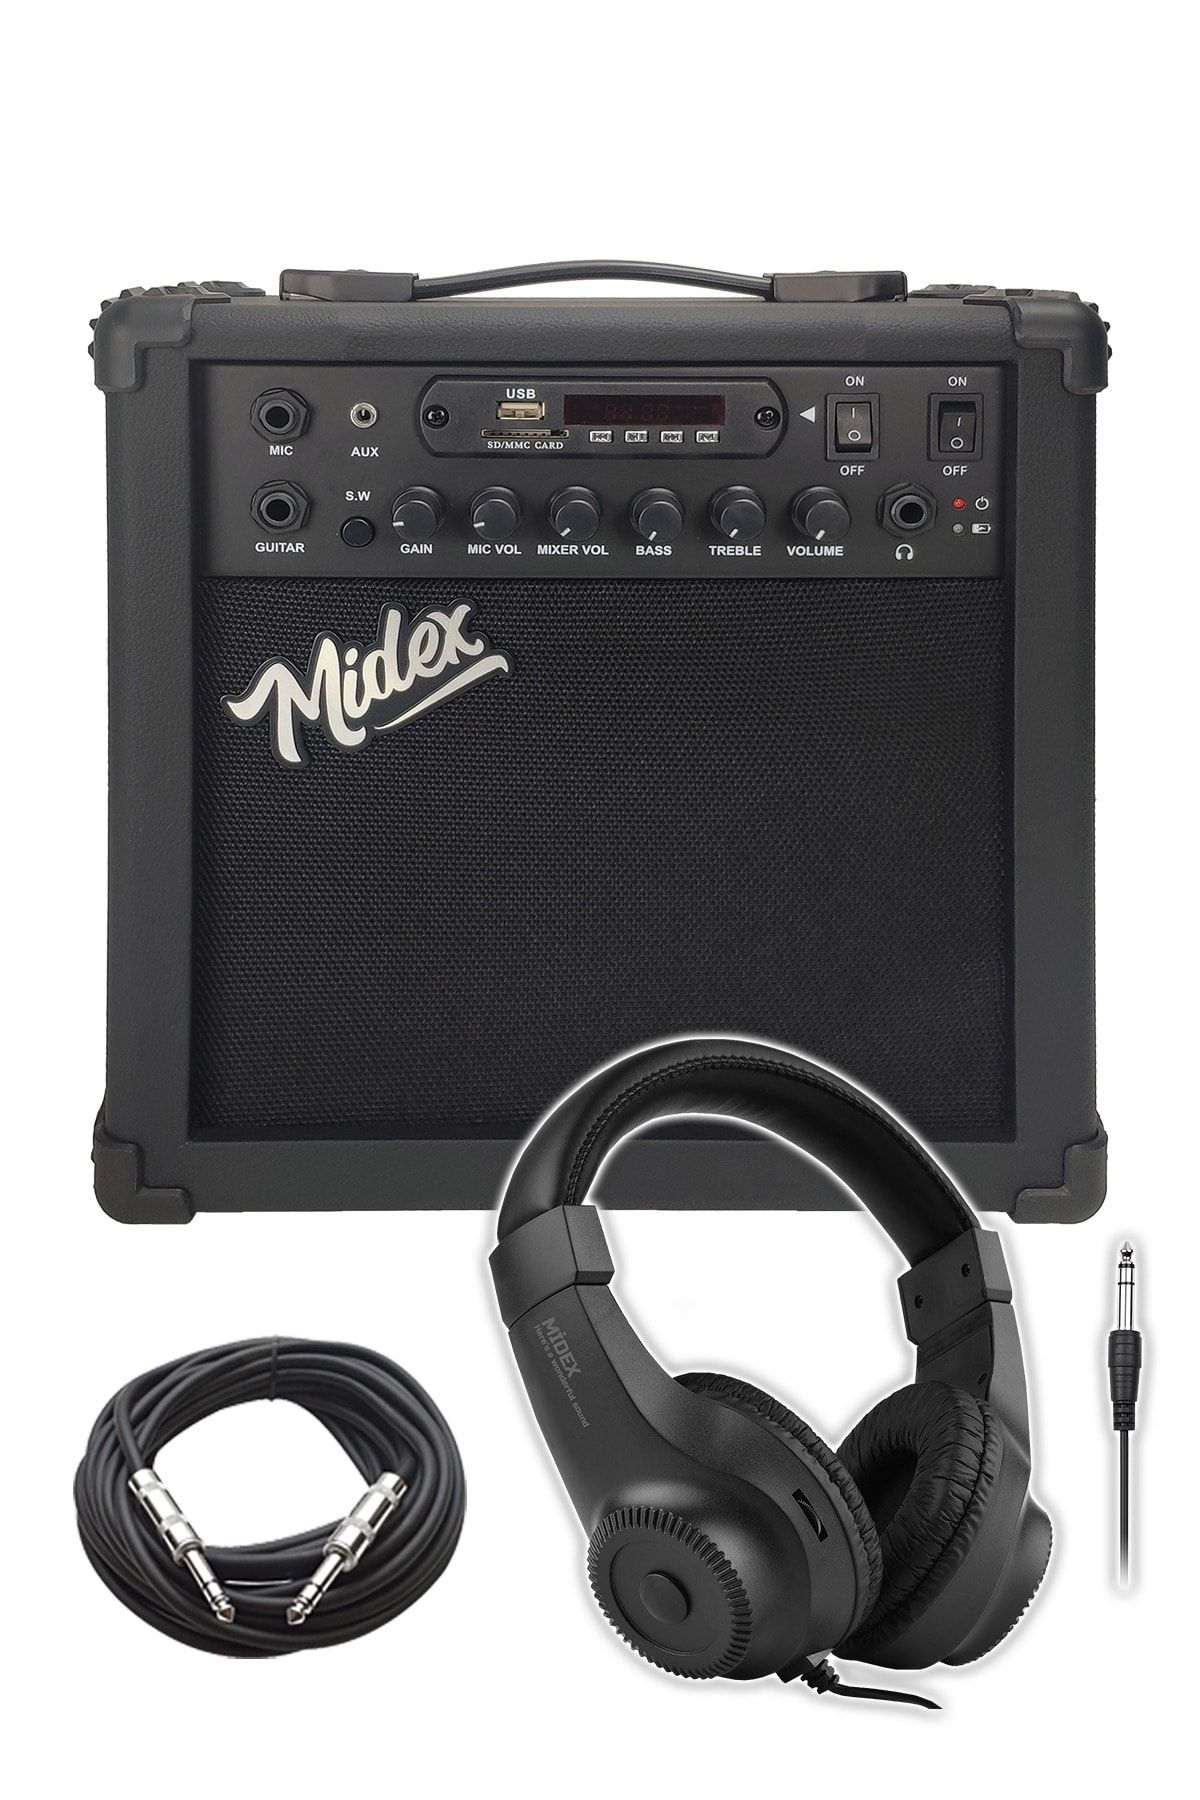 Lastvoice Midex 25 Watt Elektro Gitar Amfisi Kulaklık Ve Jack Kablosu Ile (ŞARJLI BLUETOOTH USB) Mga-25bkhdd